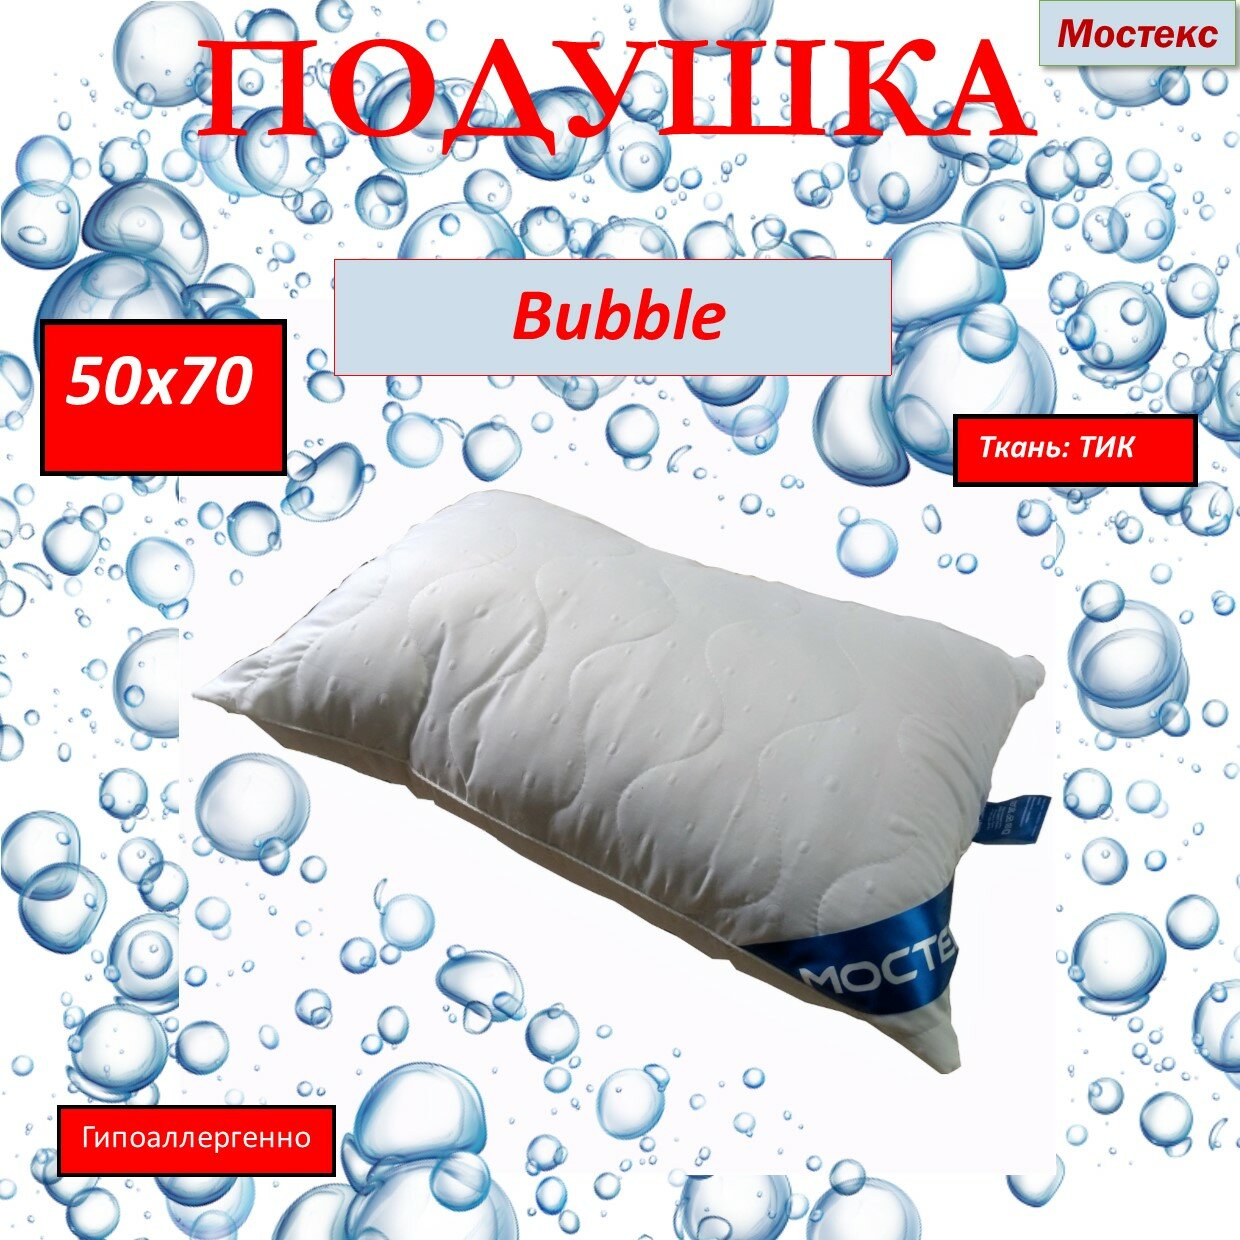 Подушка "Bubble" Мостекс 50х70